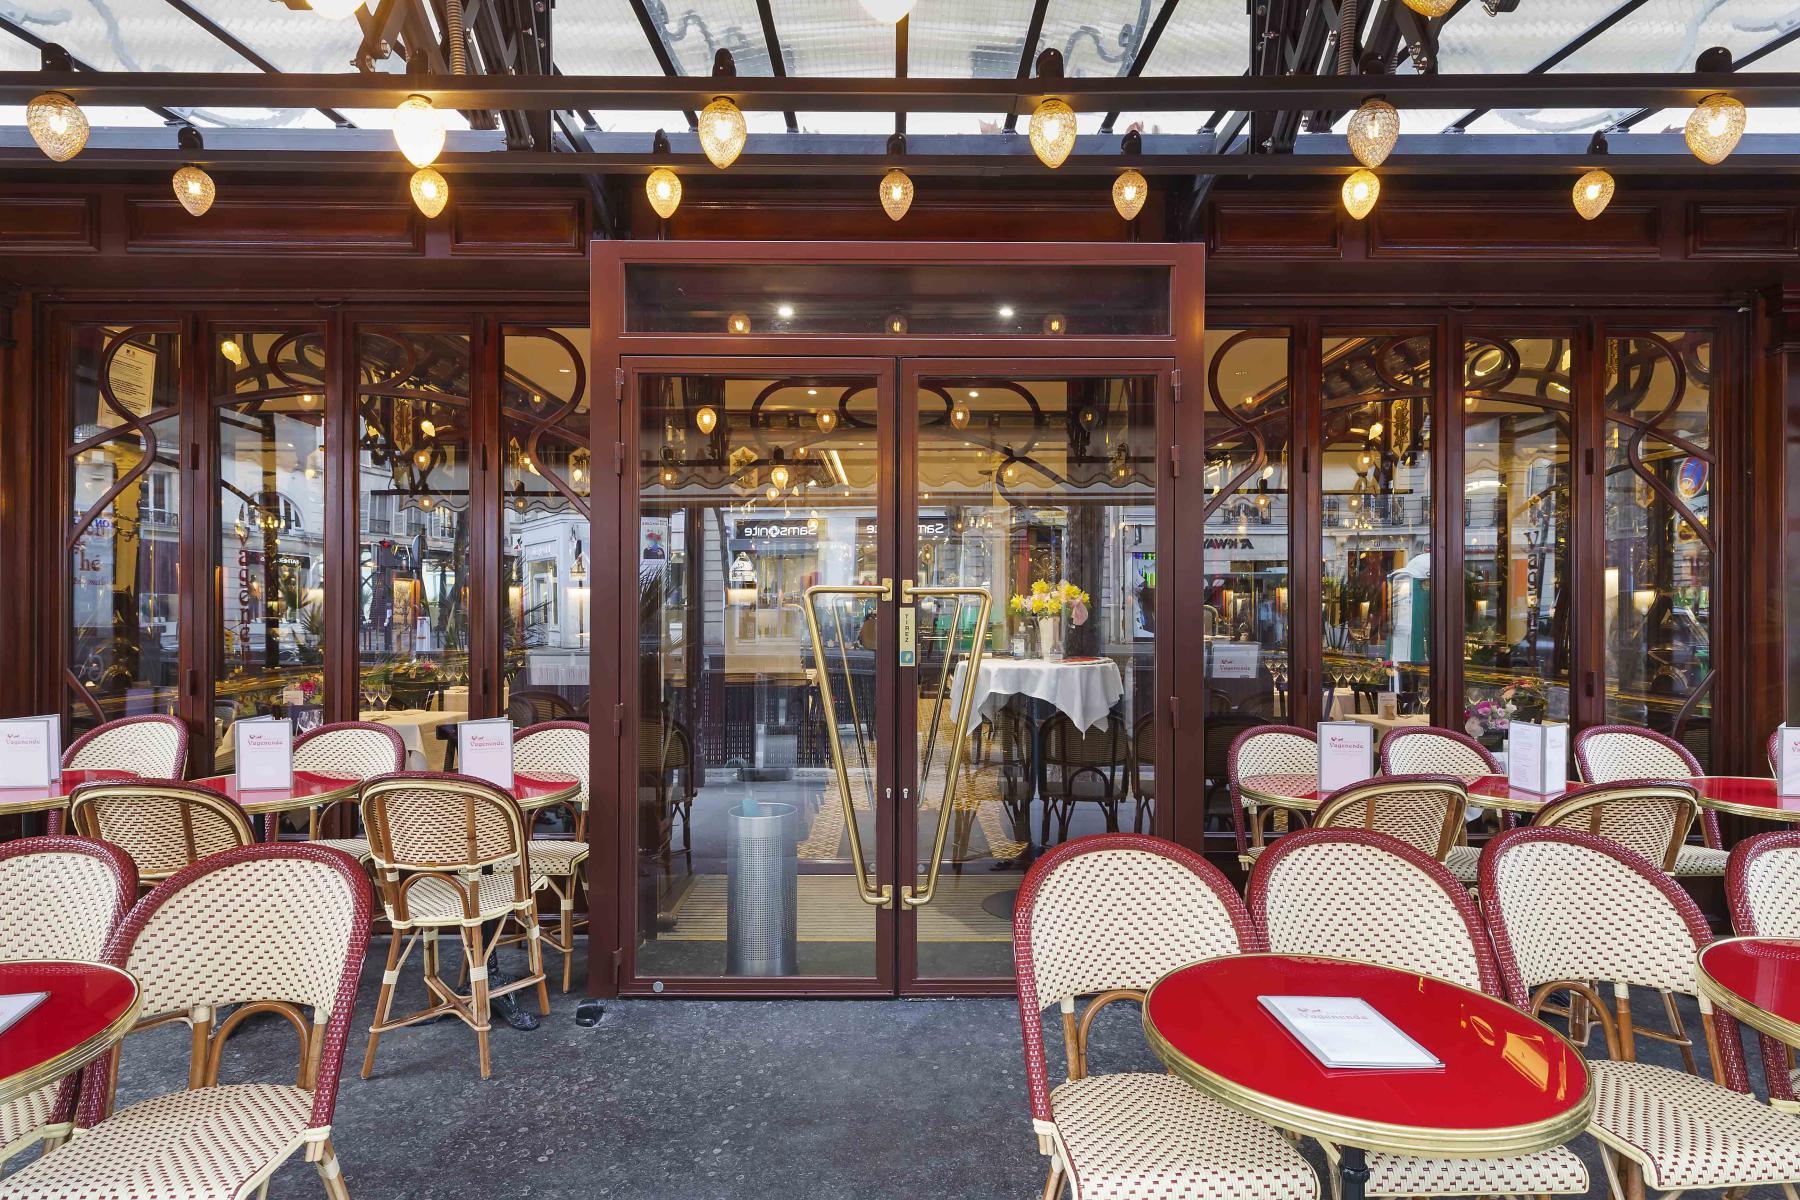 Façade de restaurant Art Nouveau avec portes repliables en accordéon en acier avec habillage bois